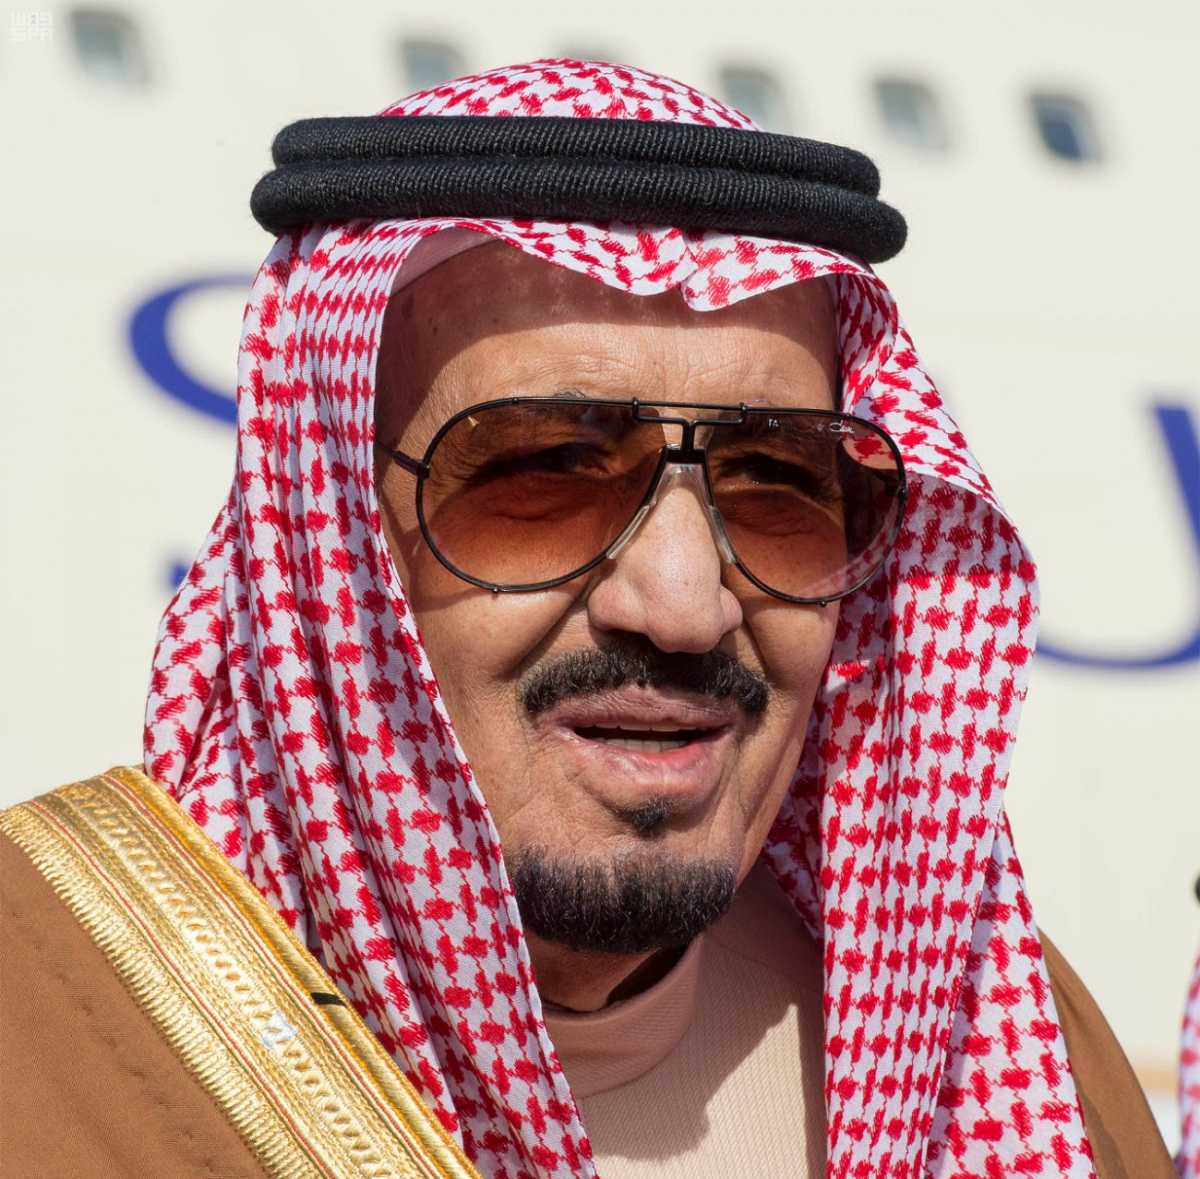 السعوديون للملك سلمان بعد عودته من جولته الخليجية : #المملكه_كلها_مشتاقه_لك